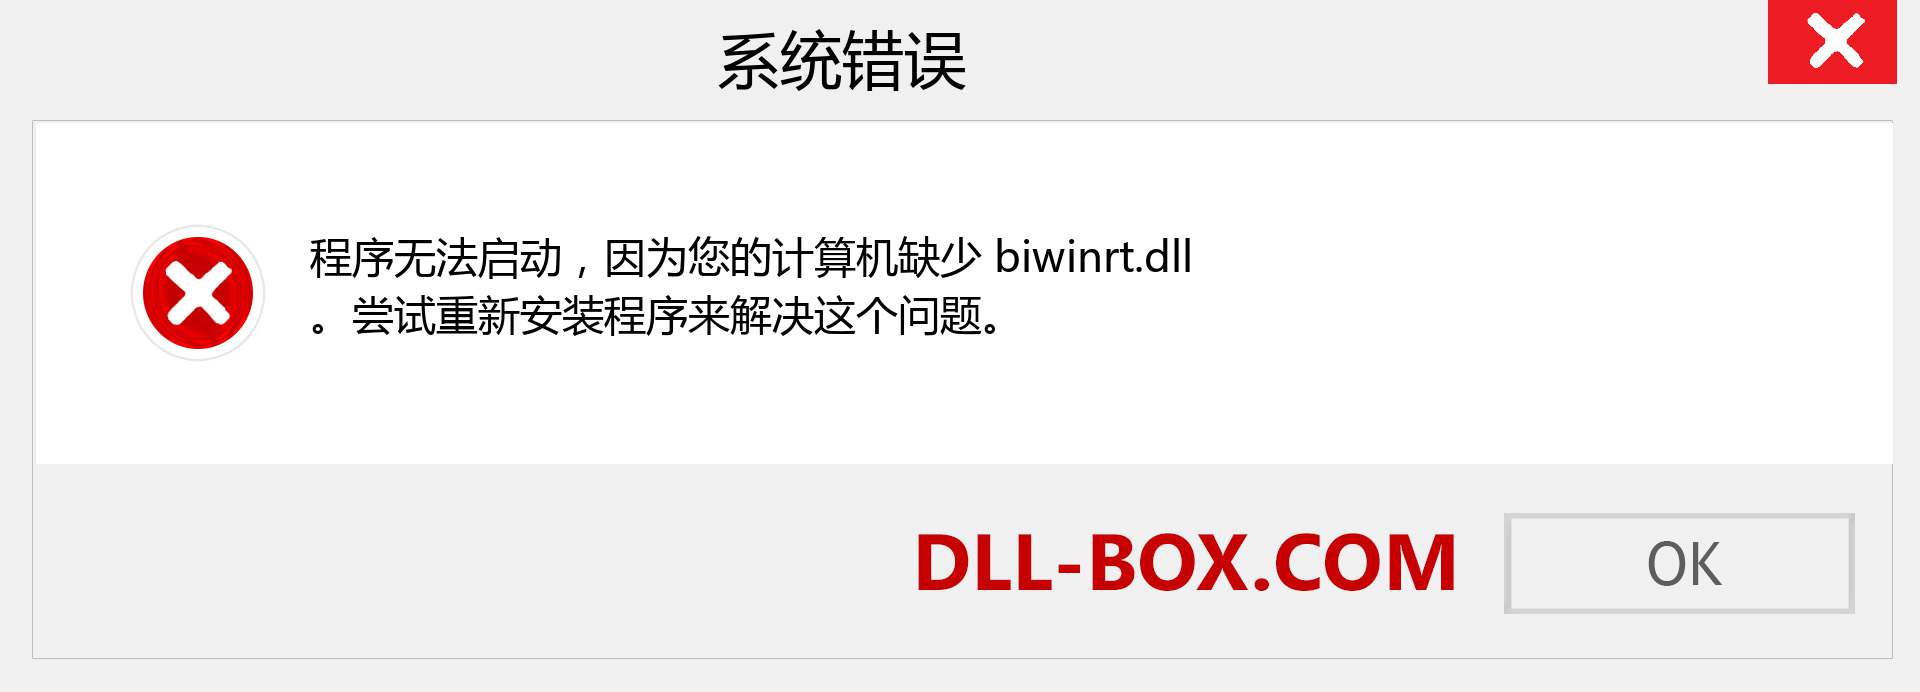 biwinrt.dll 文件丢失？。 适用于 Windows 7、8、10 的下载 - 修复 Windows、照片、图像上的 biwinrt dll 丢失错误